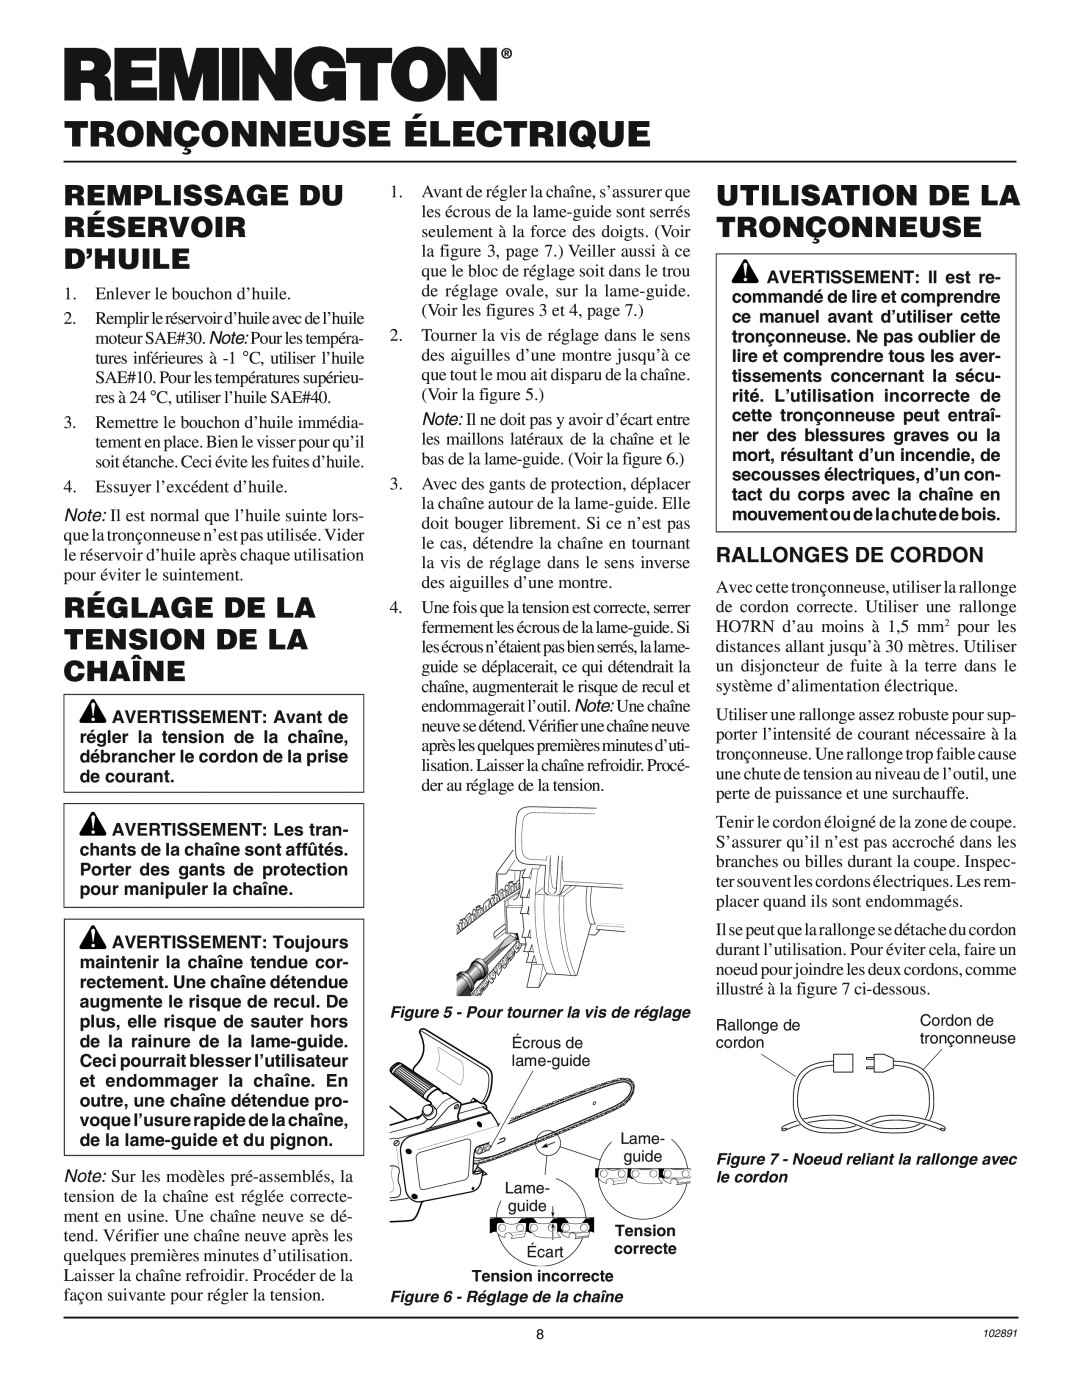 Desa 100271-01 Remplissage Du Réservoir D’Huile, Réglage De La Tension De La Chaîne, Utilisation De La Tronçonneuse 